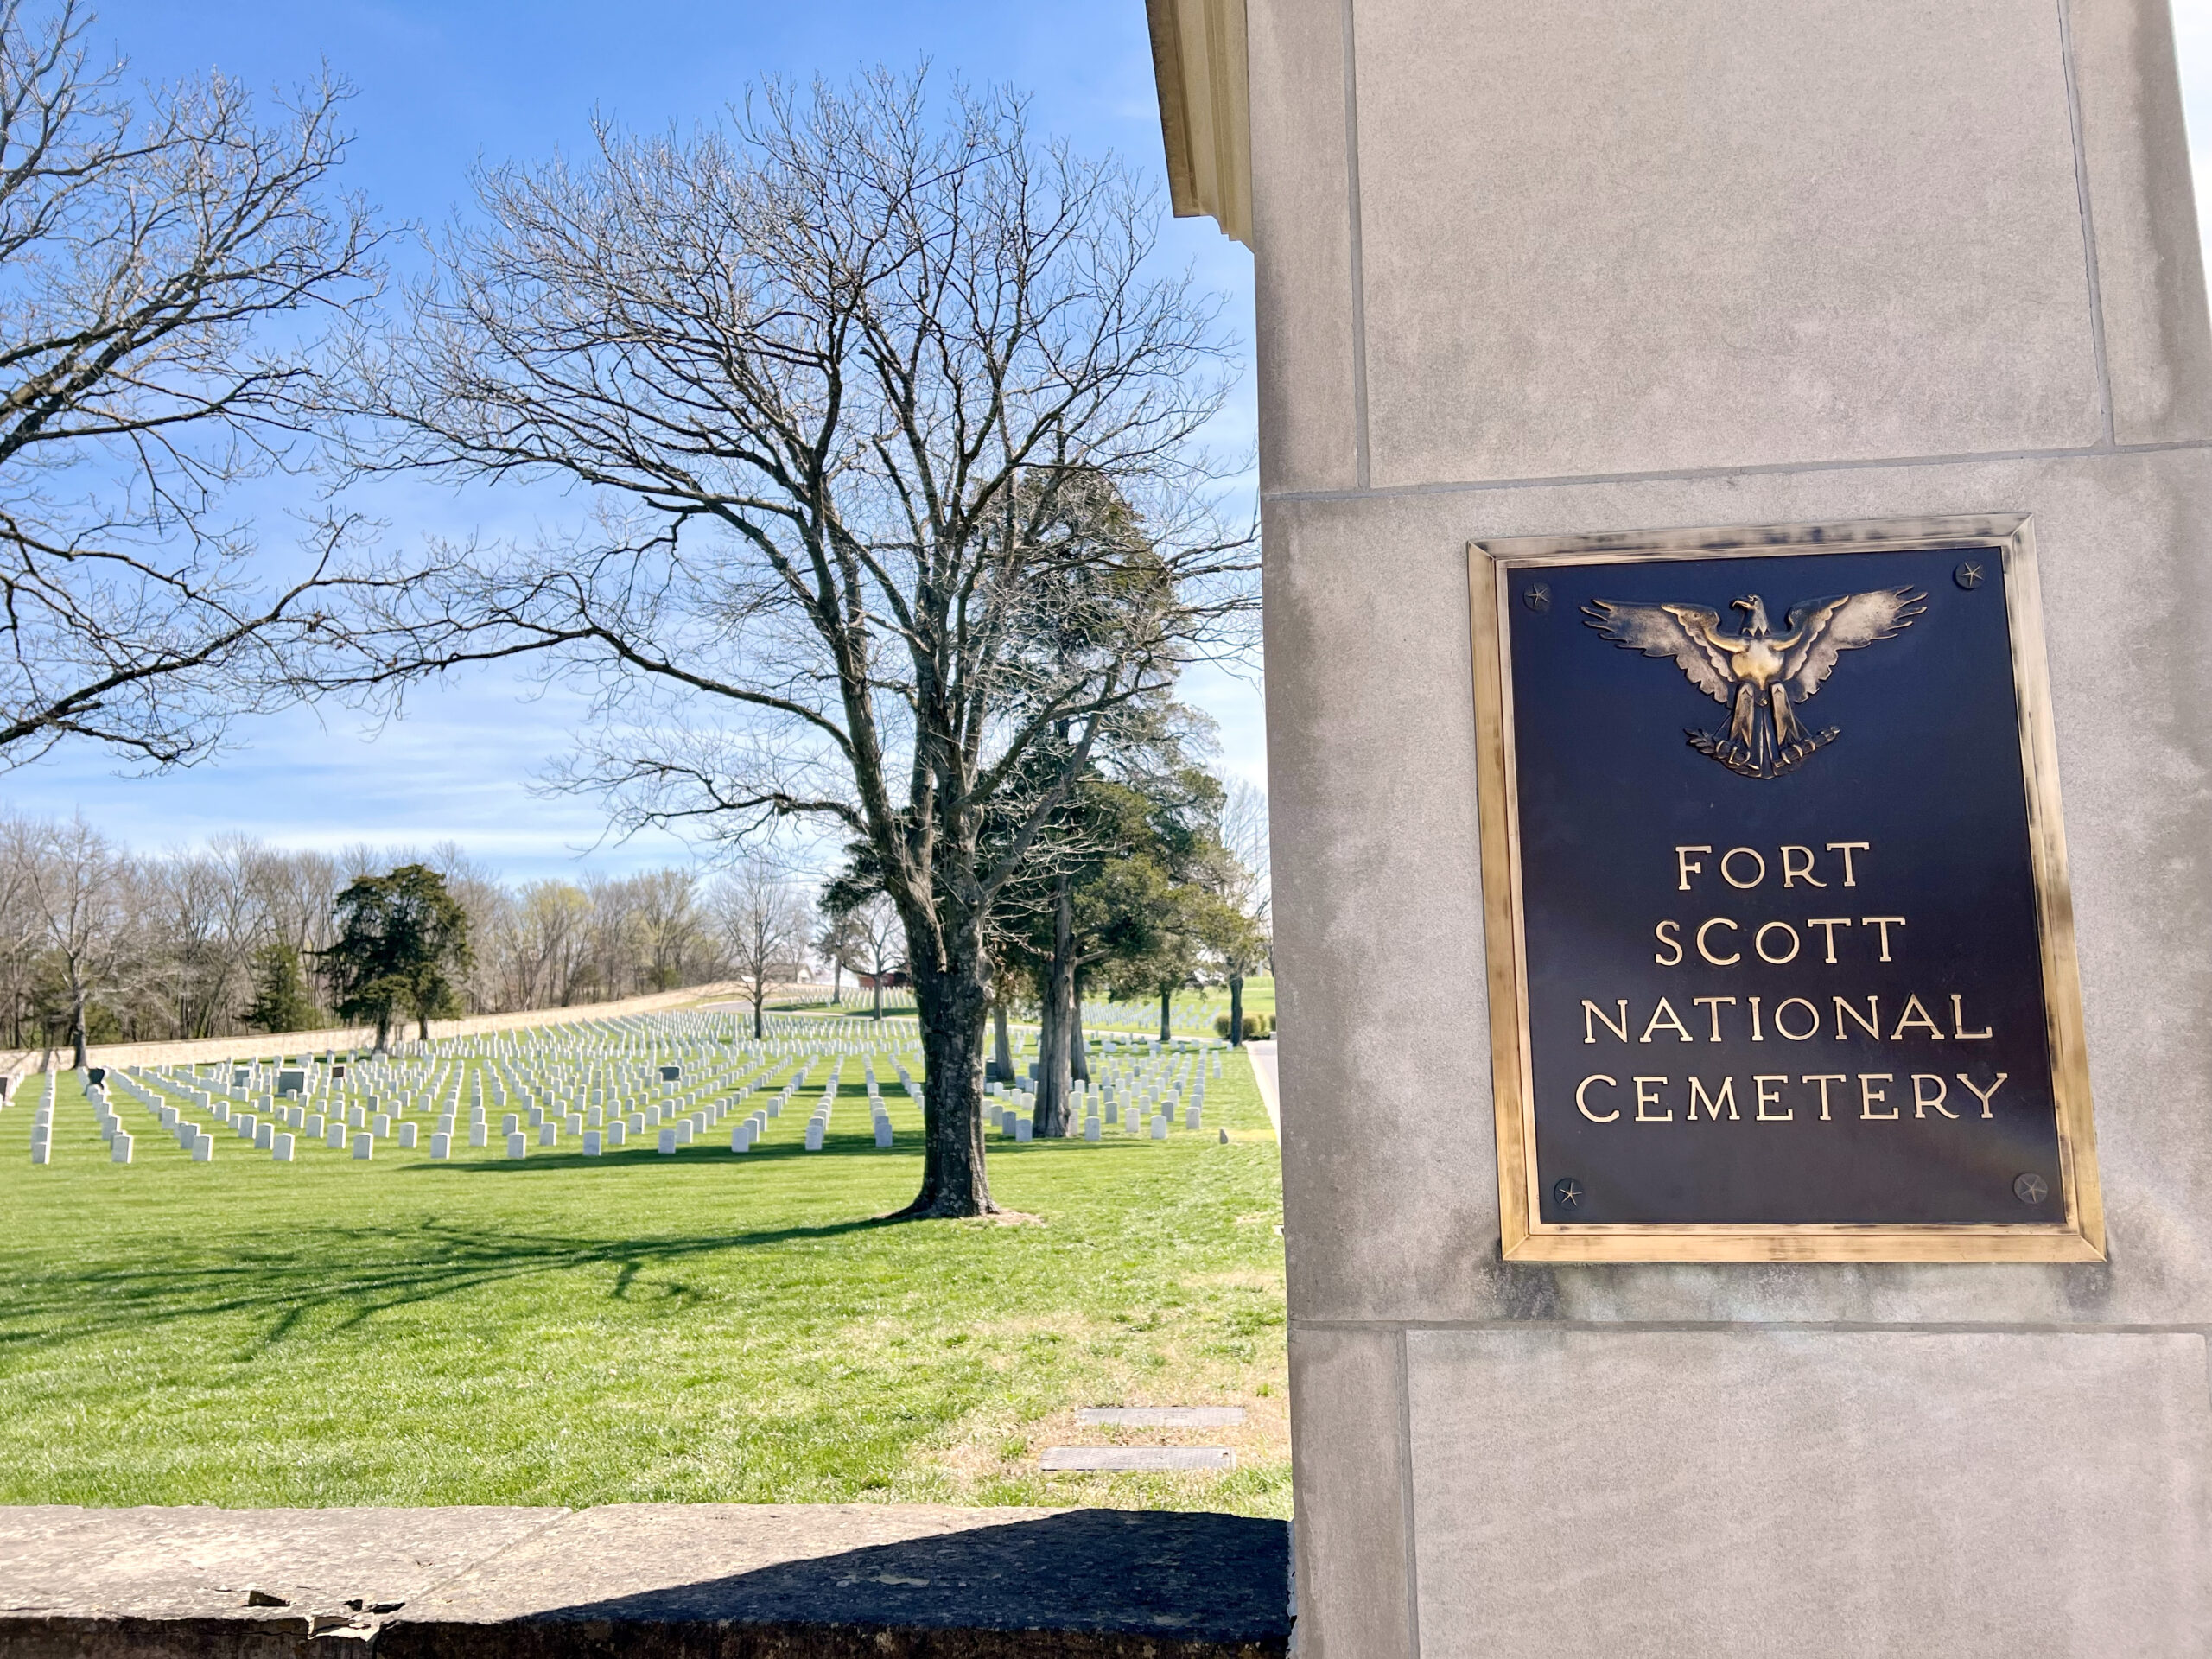 Fort Scott National Cemetery